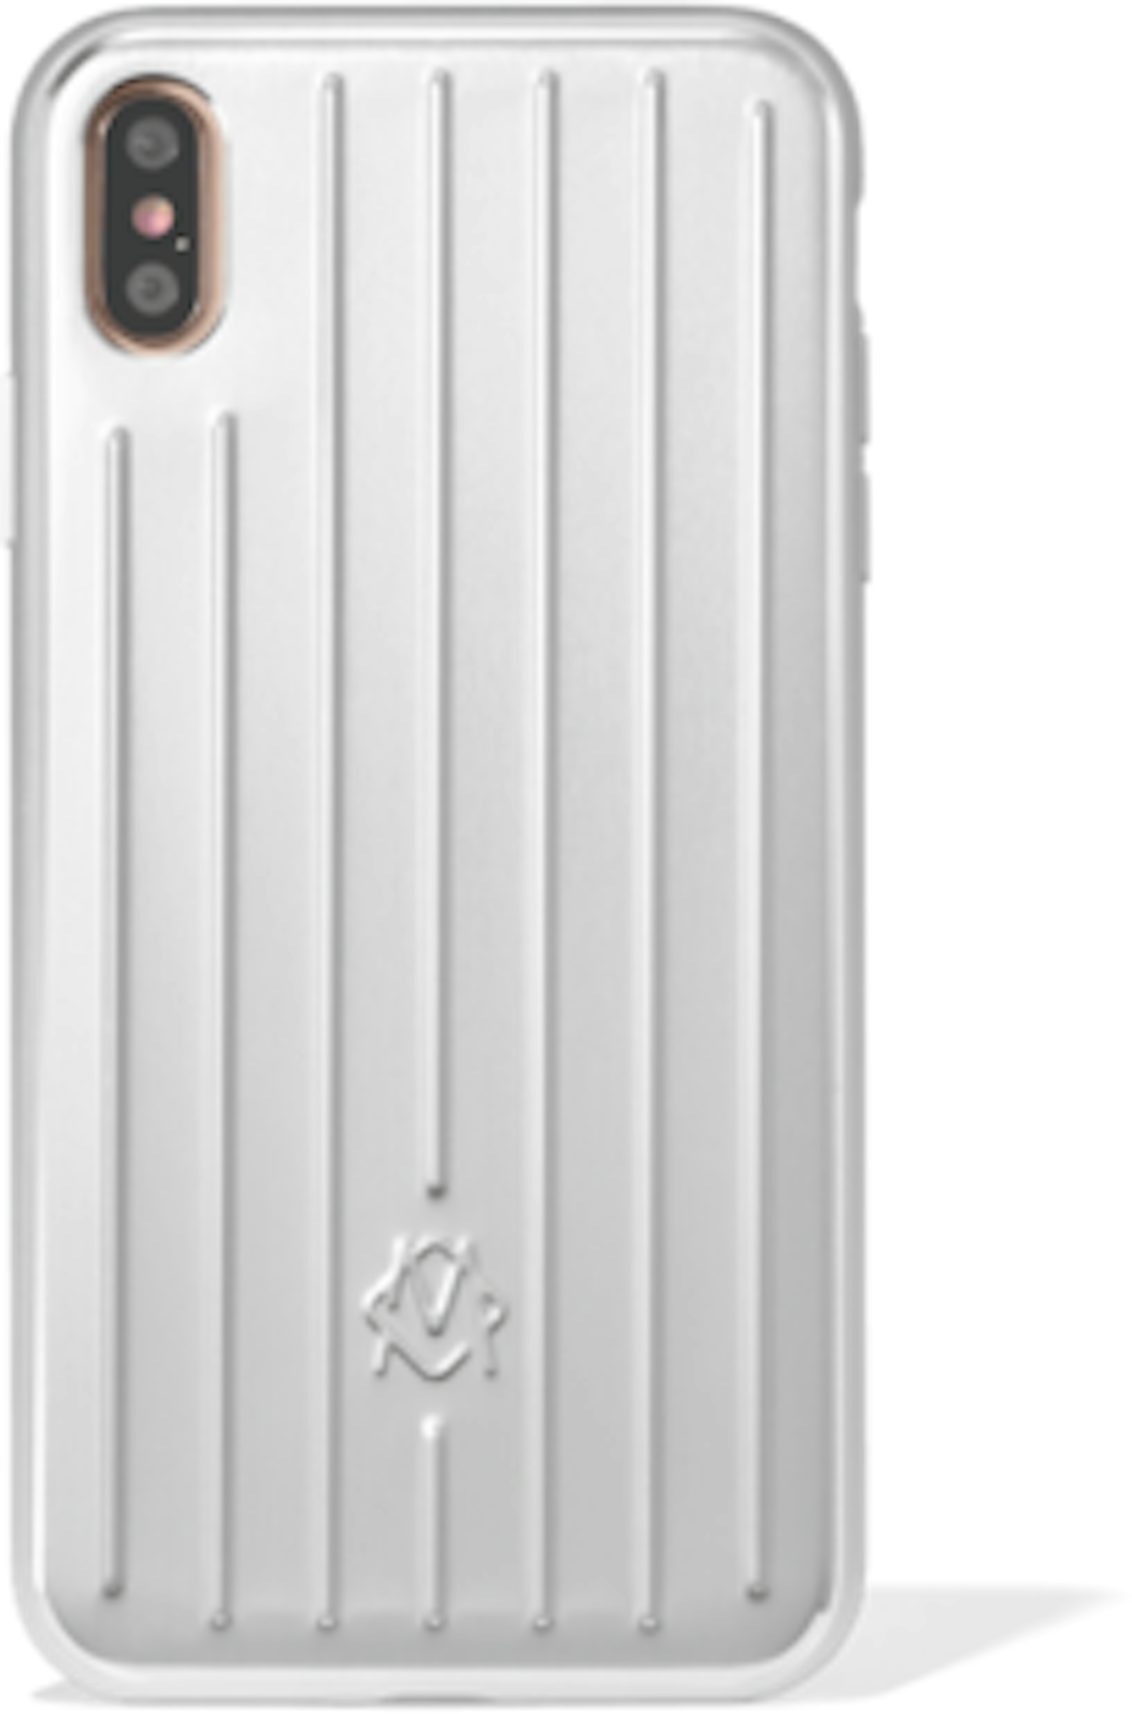 SUPREME X GOYARD iPhone XR Case Cover